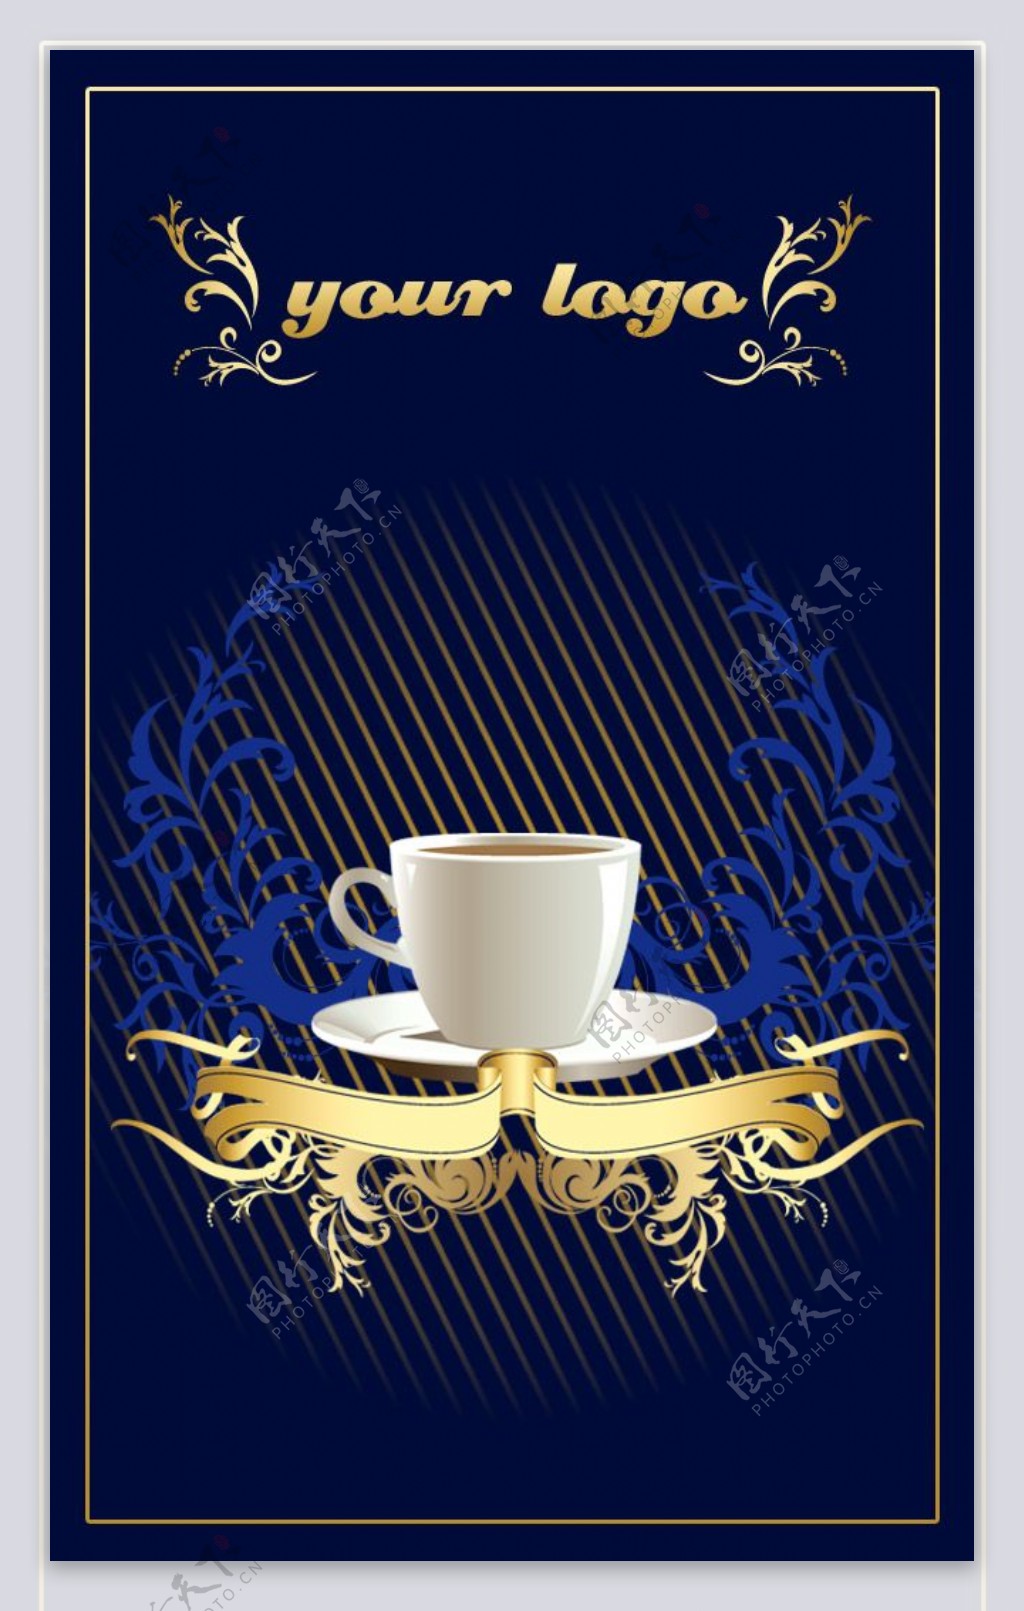 咖啡行业名片卡片模板PSD素材